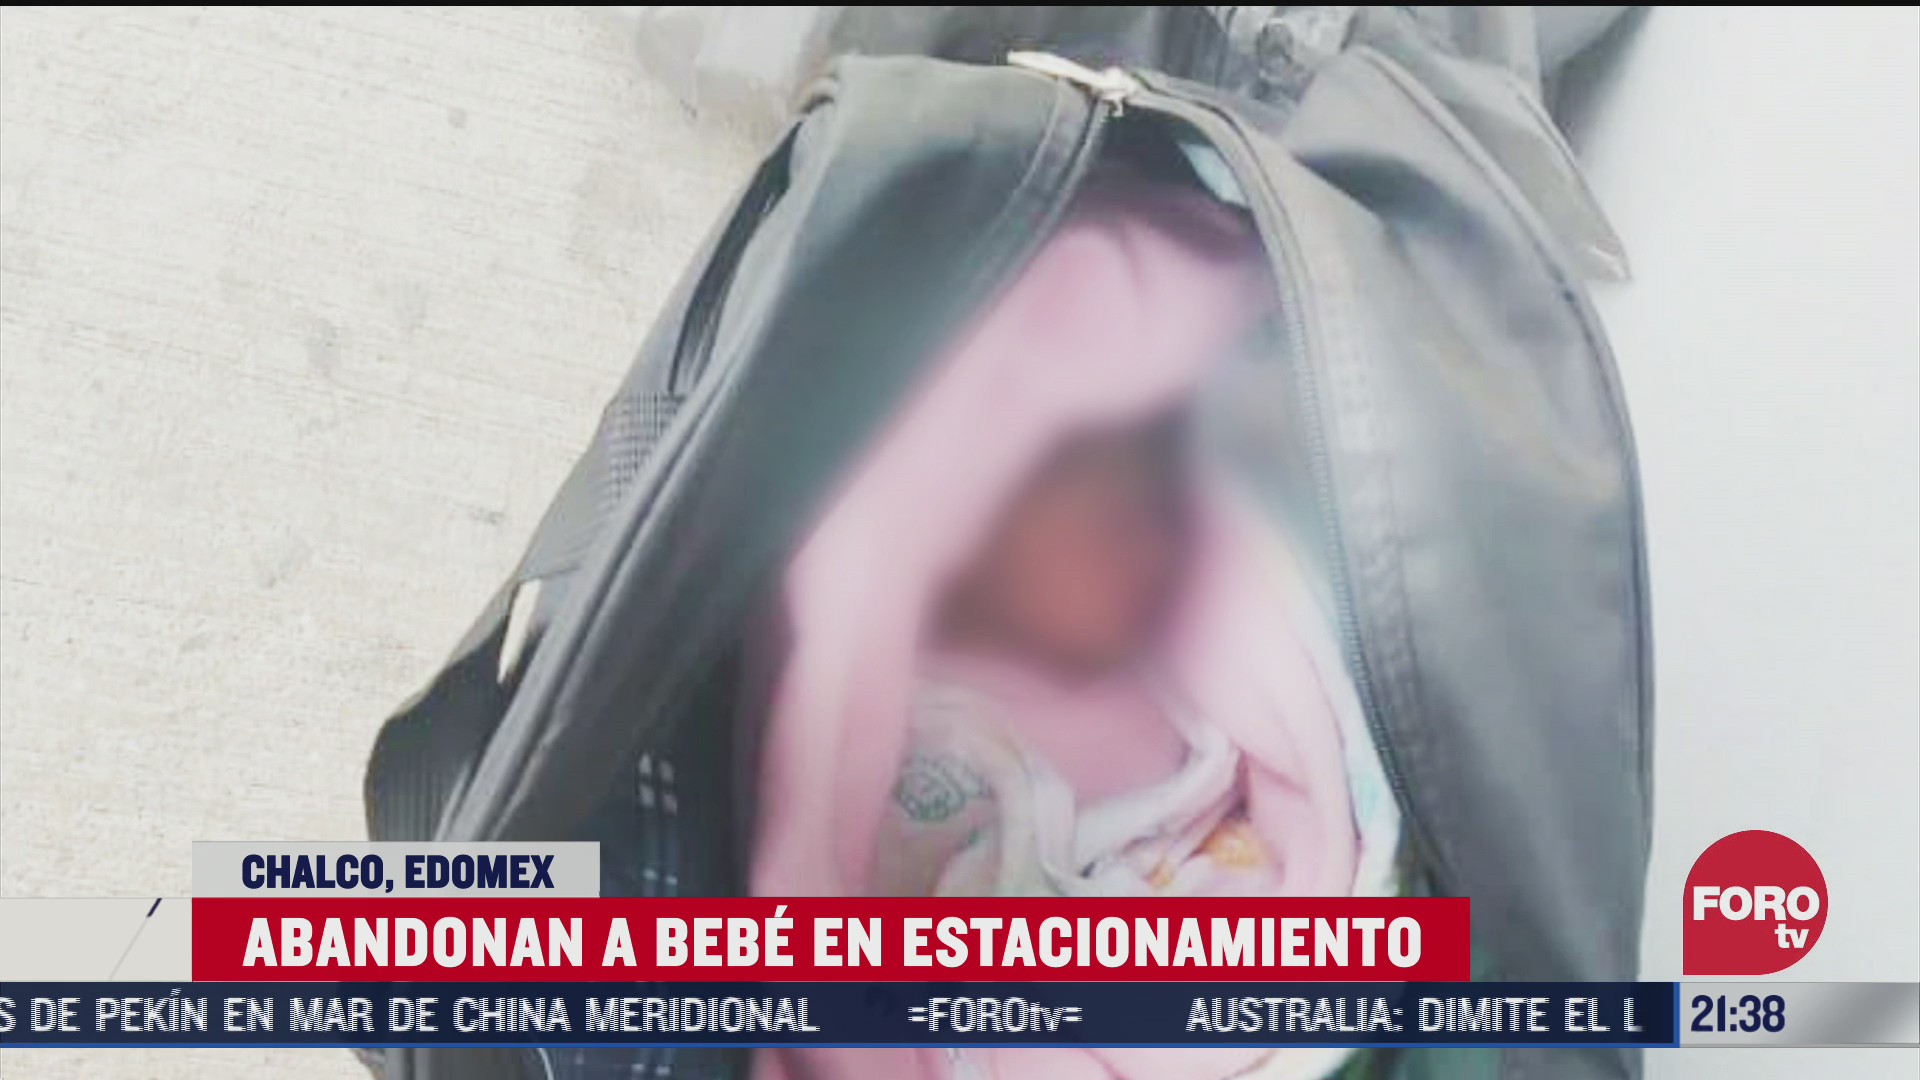 bebé abandonada en maleta en estacionamiento de chalco, Edomex